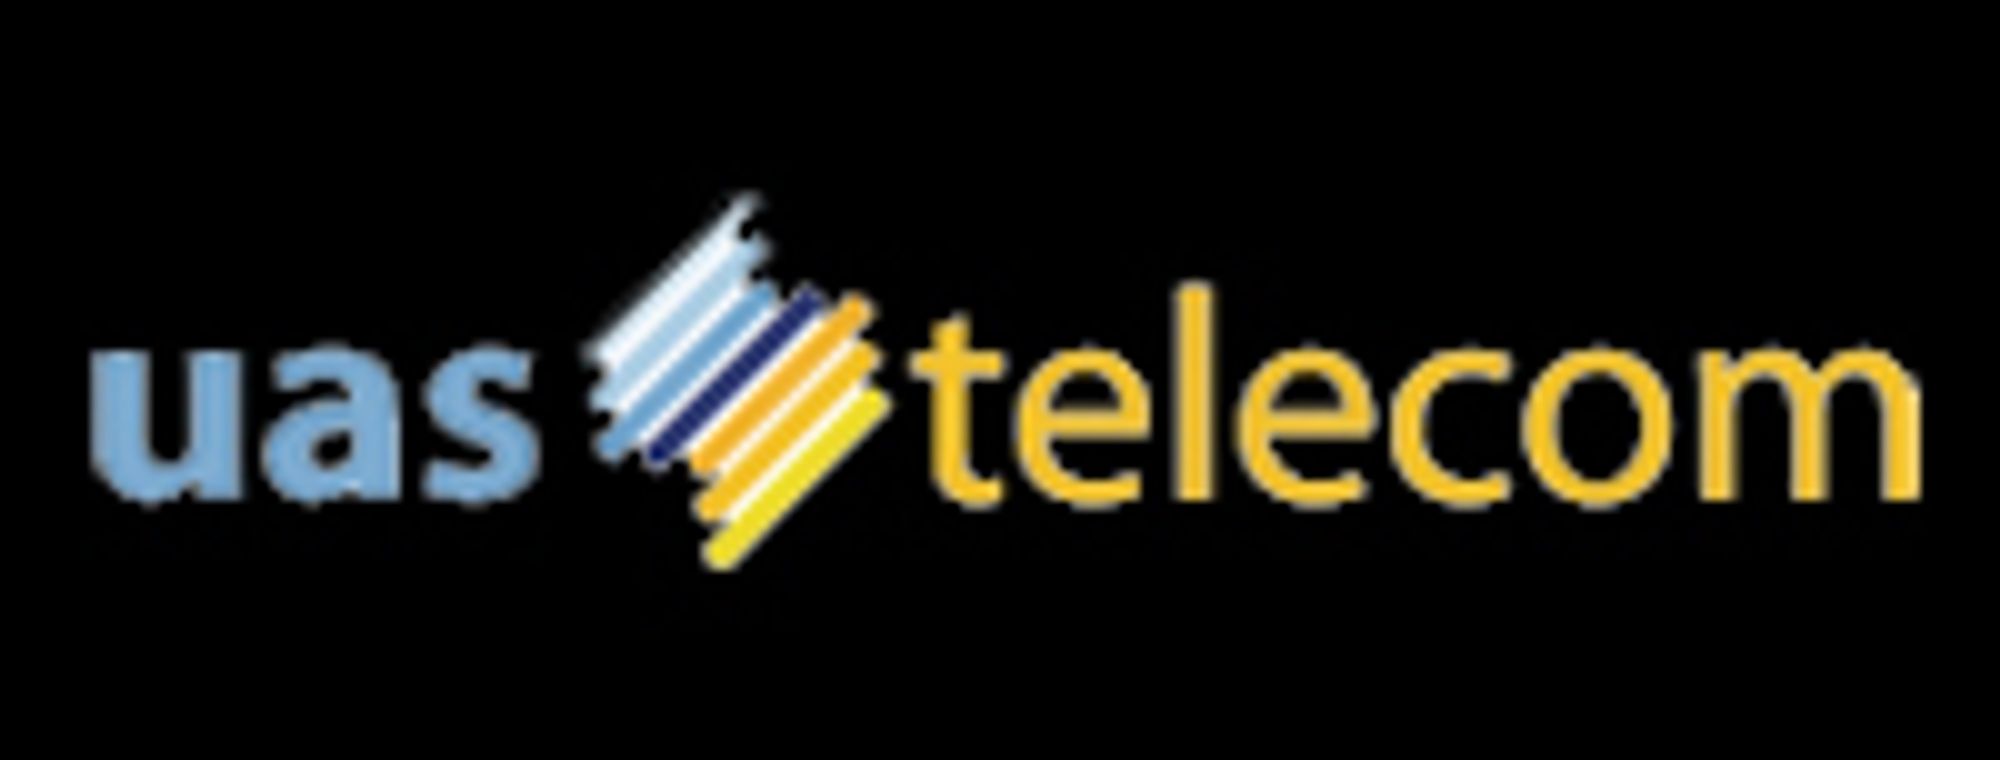 UAS Telecom